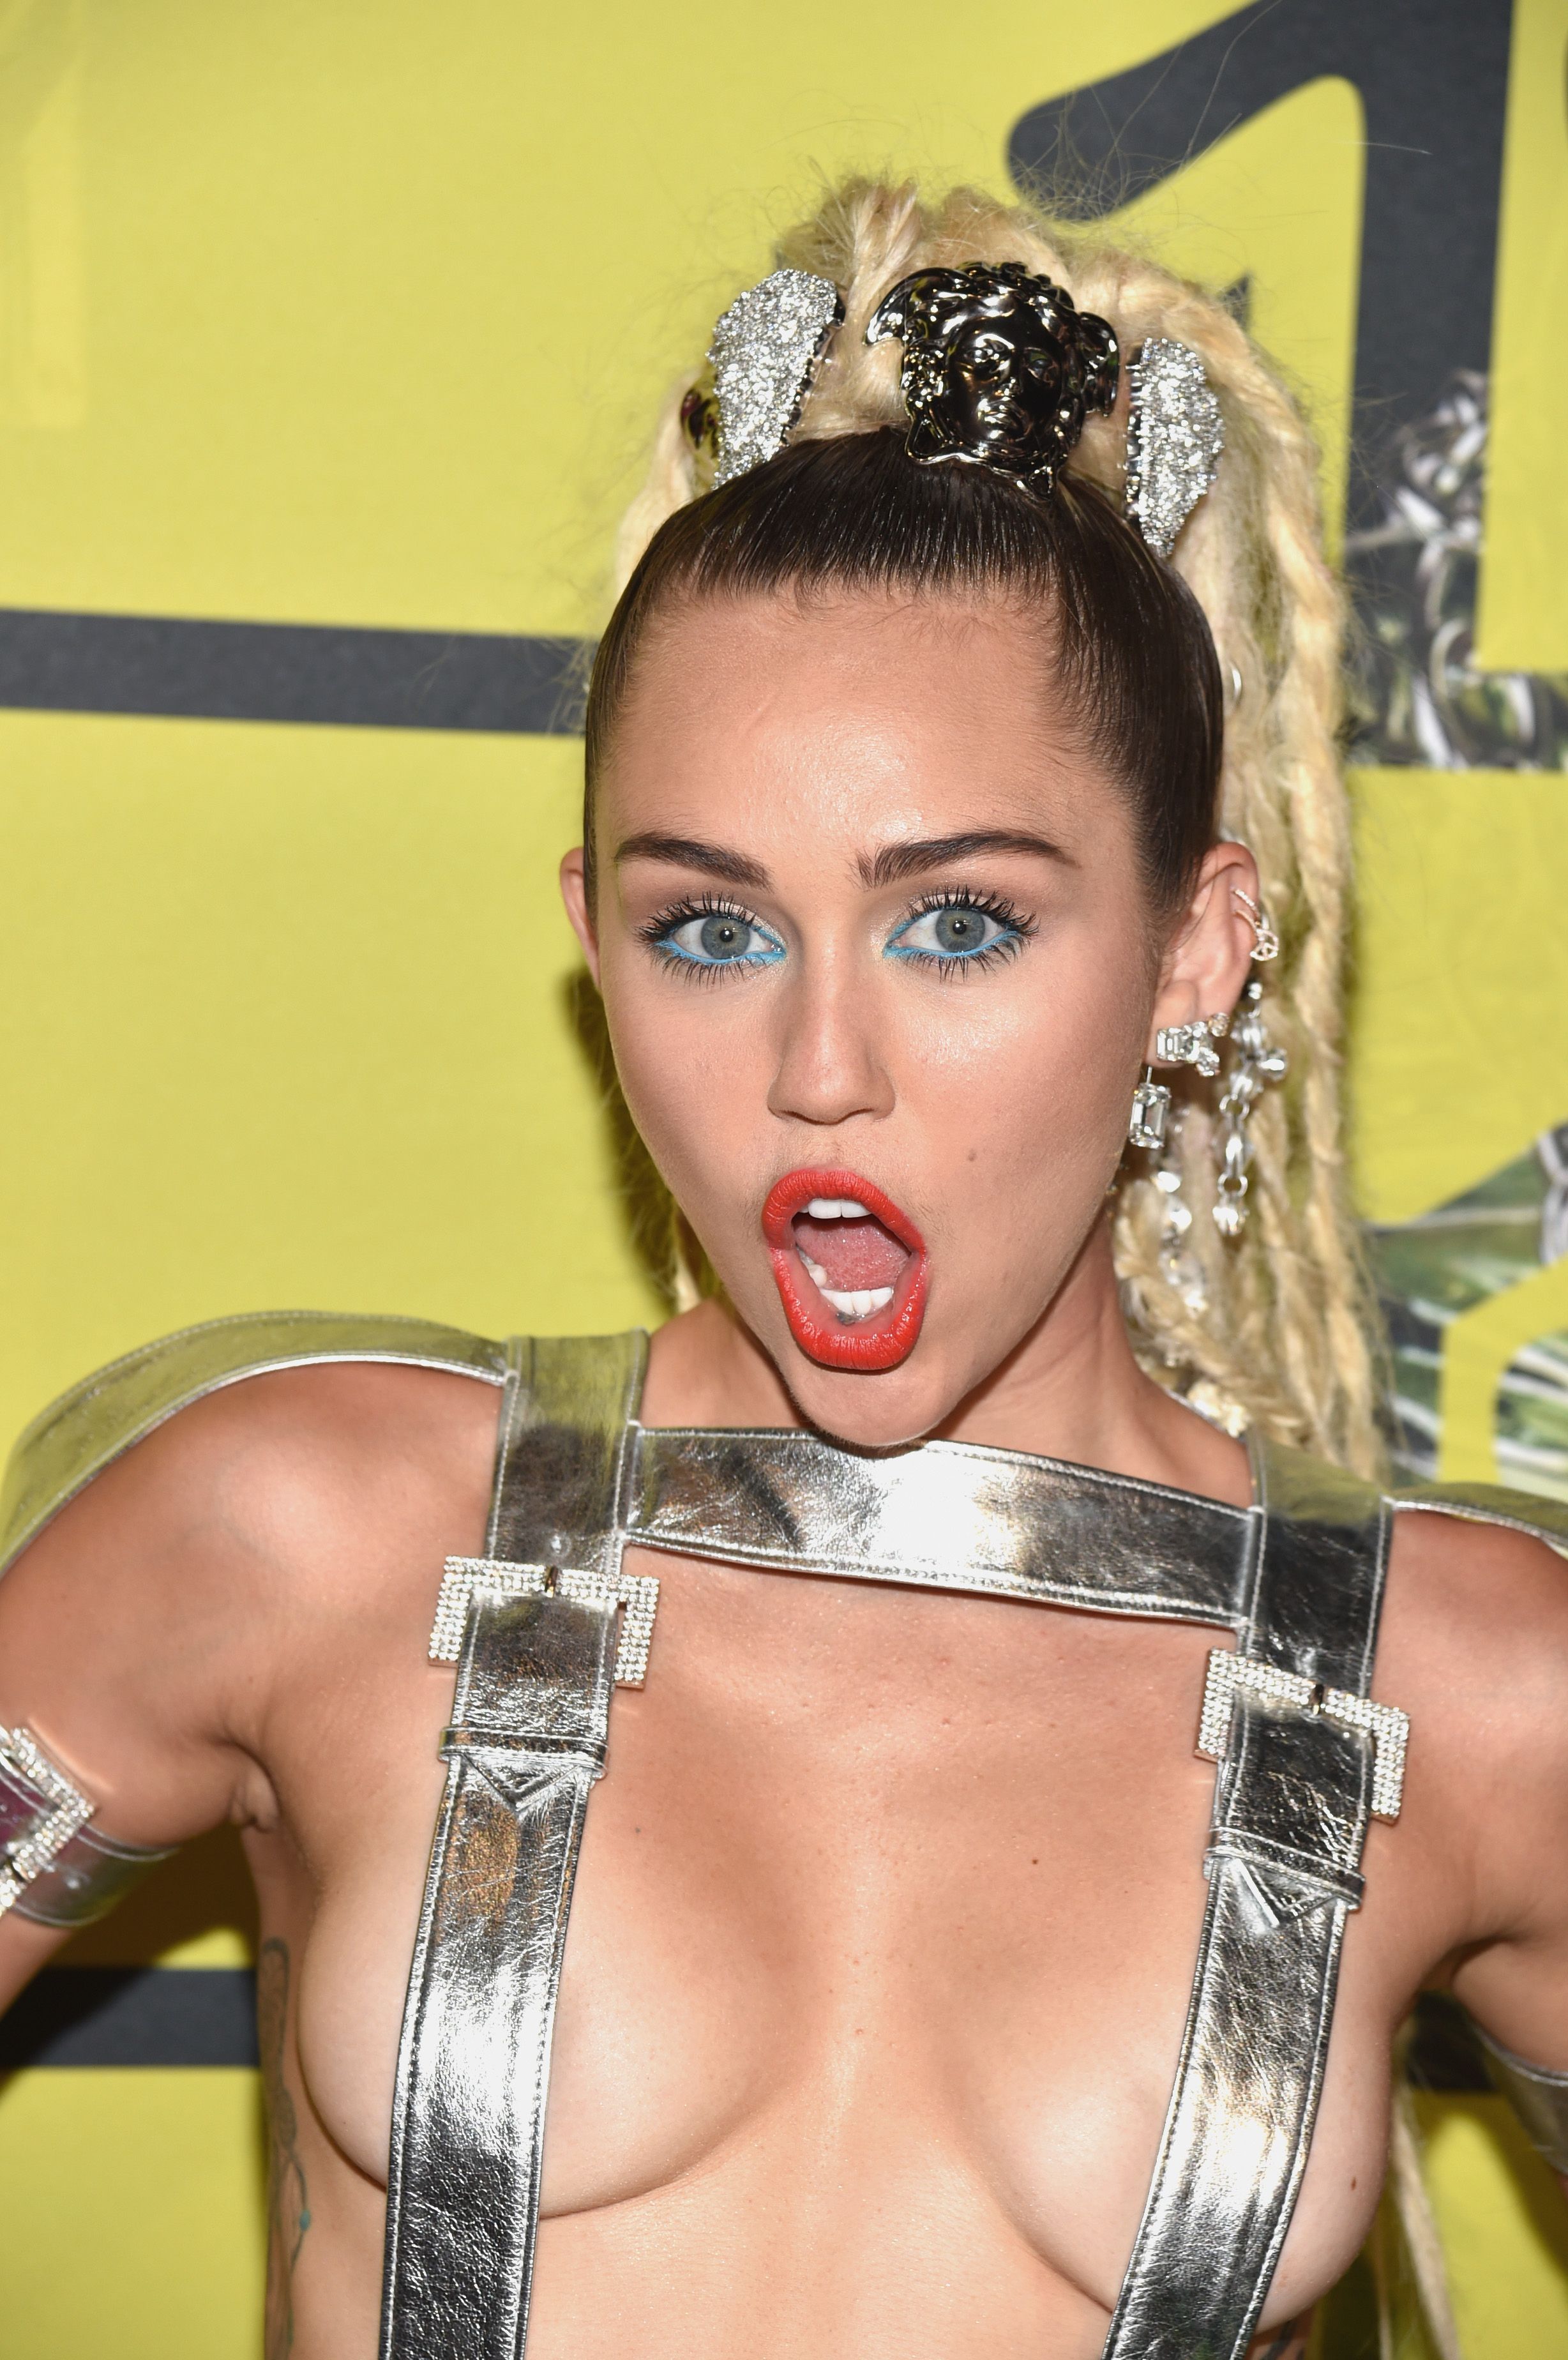 Miley Cyrus's VMAs dreadlocks cause controversy